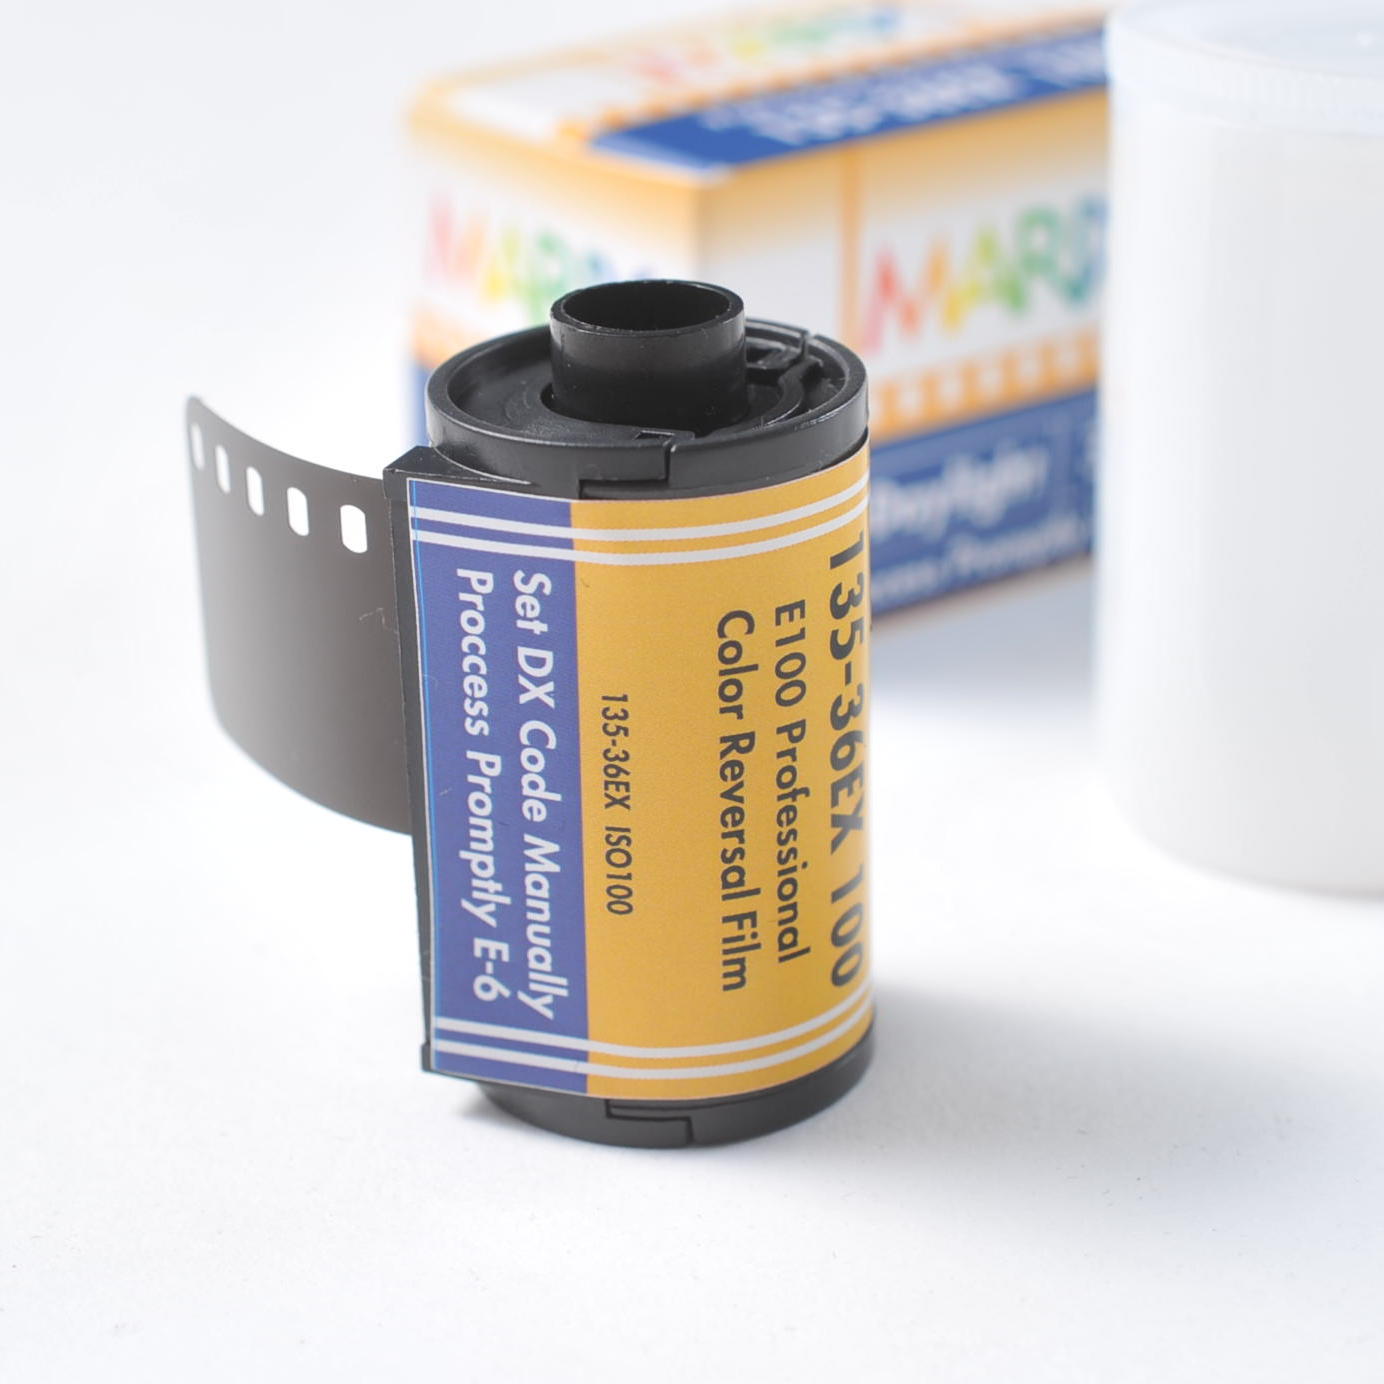 【送料無料 3個セット】マリックス カラーリバーサルフィルム  100D 36枚 MARIX Color Reversal Film